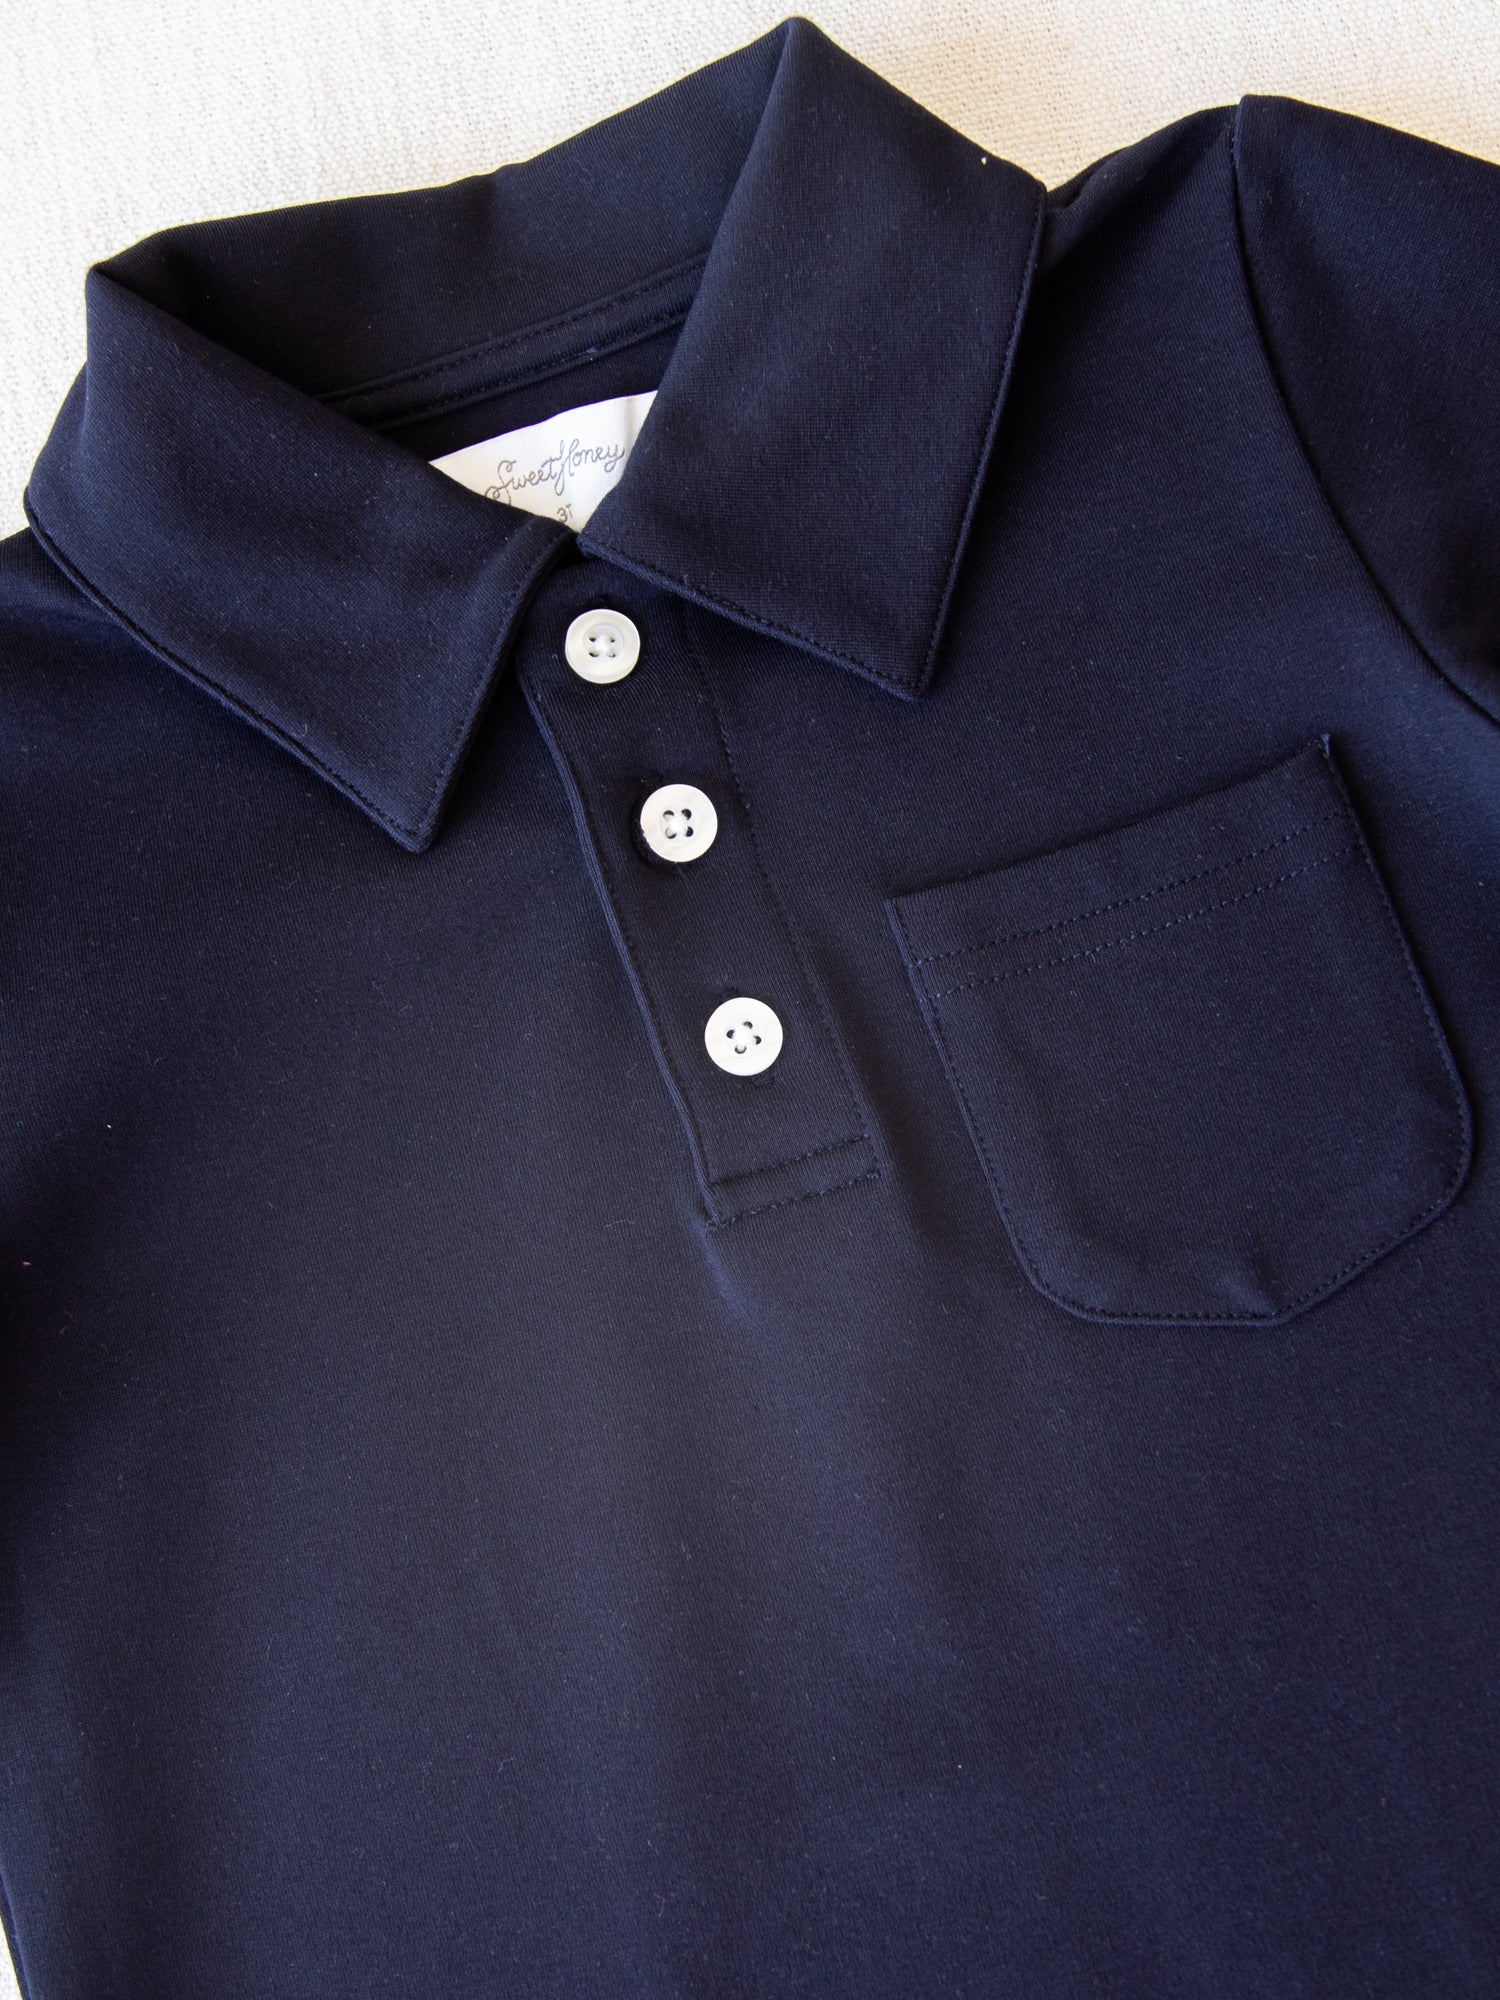 Polo Shirt - Night - SweetHoney Clothing Sky